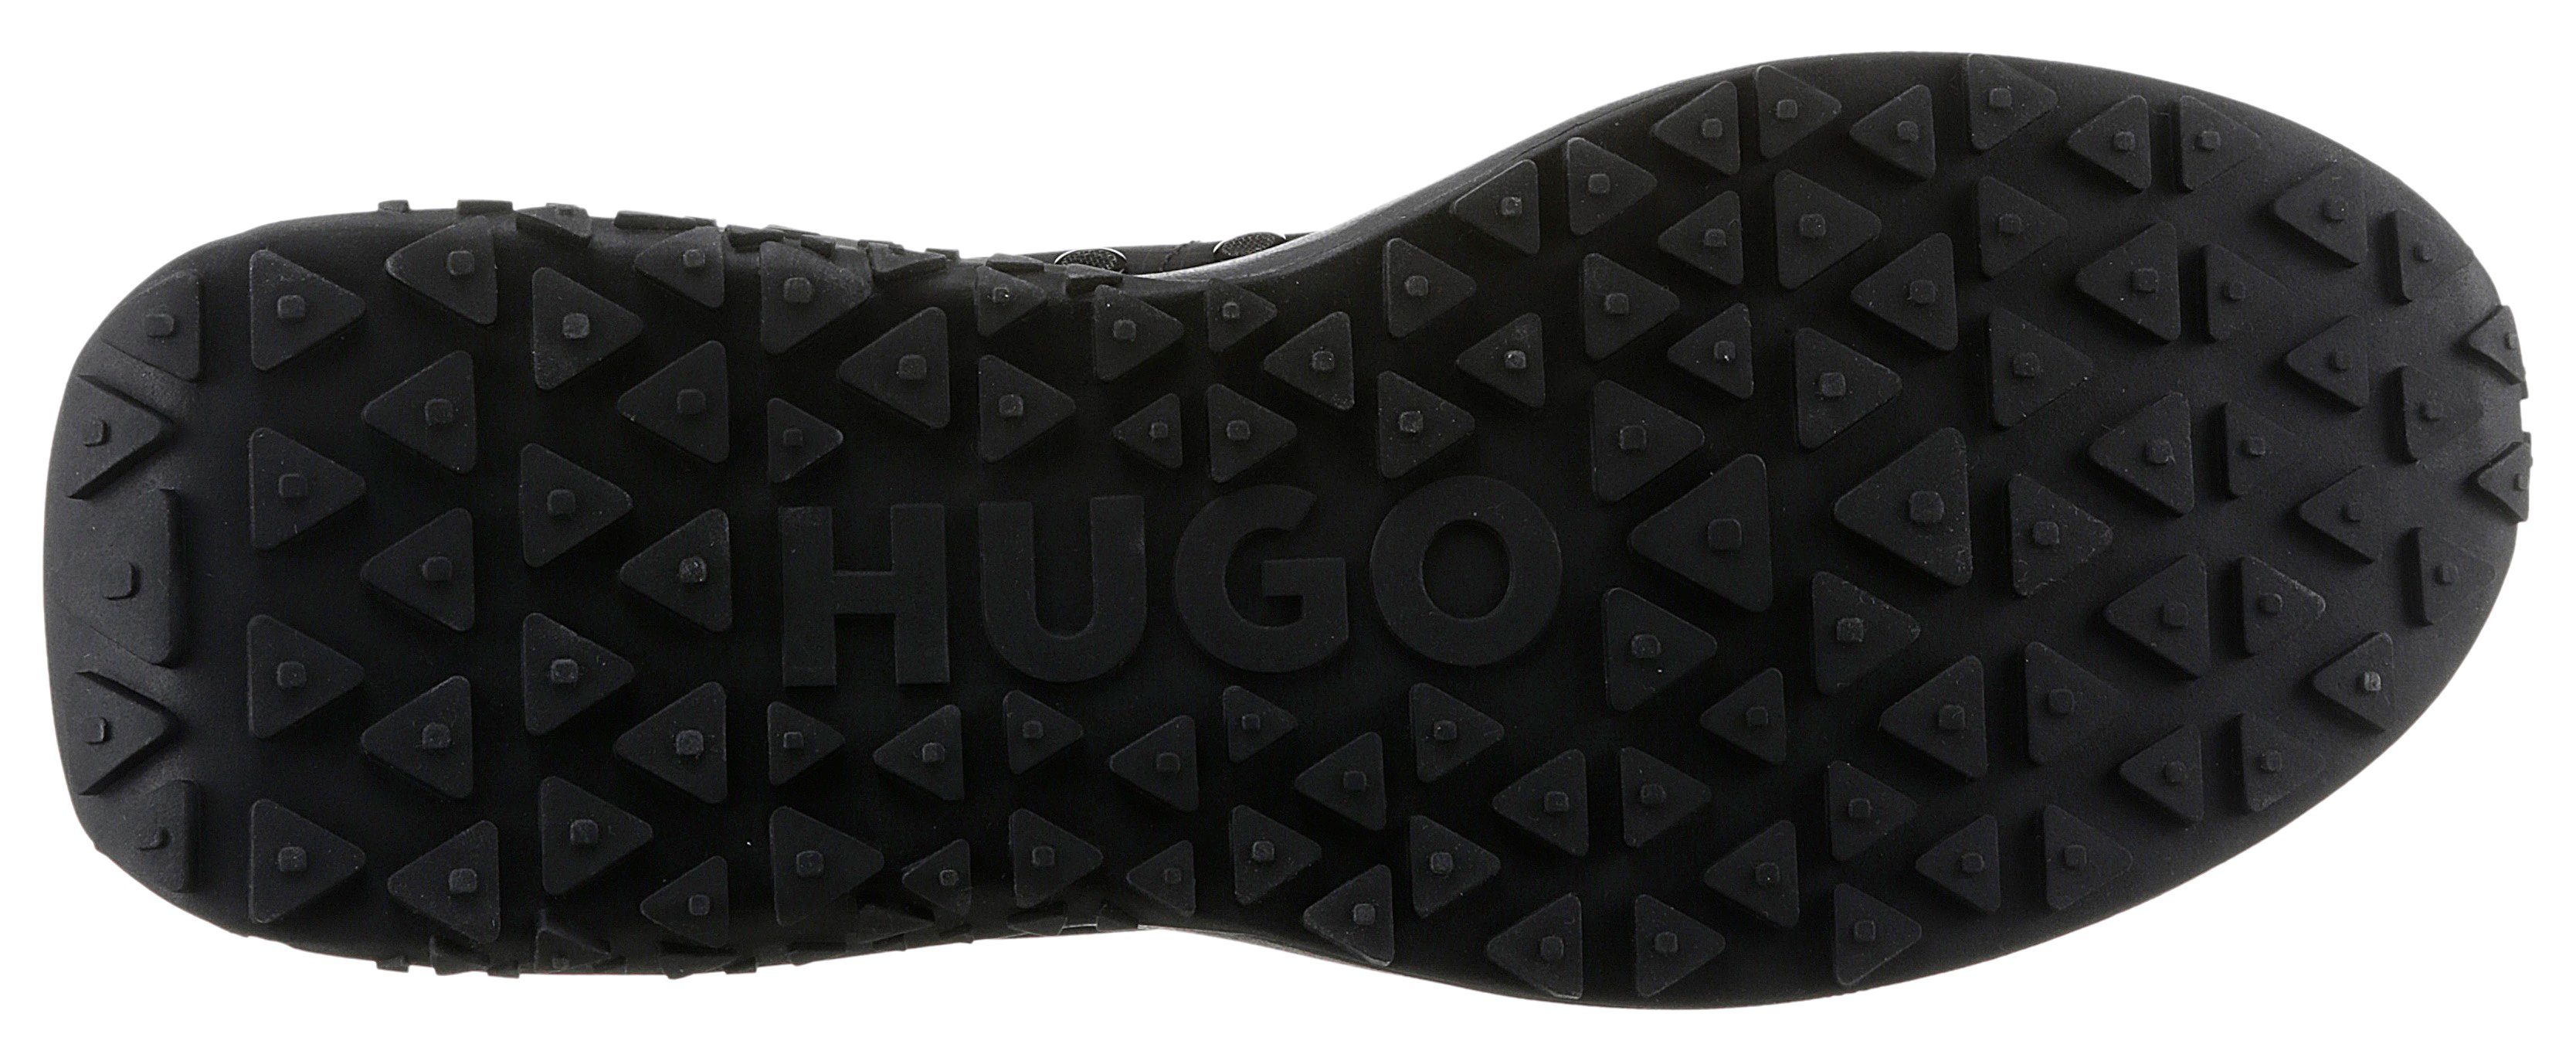 HUGO mit Kane_Runn Anziehlasche Sneaker schwarz